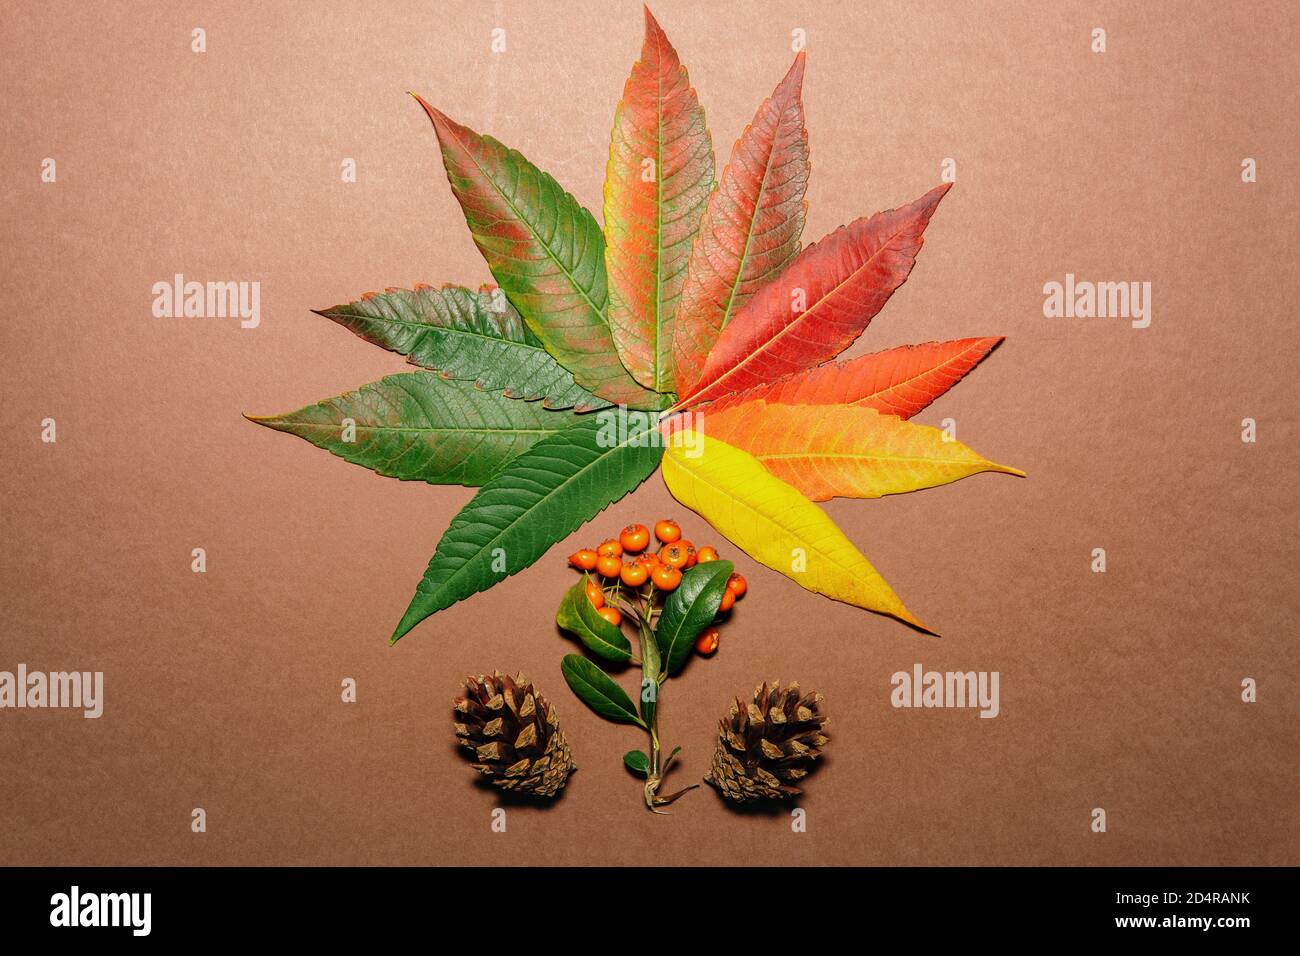 Feuille d'automne faite avec des feuilles colorées d'automne Banque D'Images